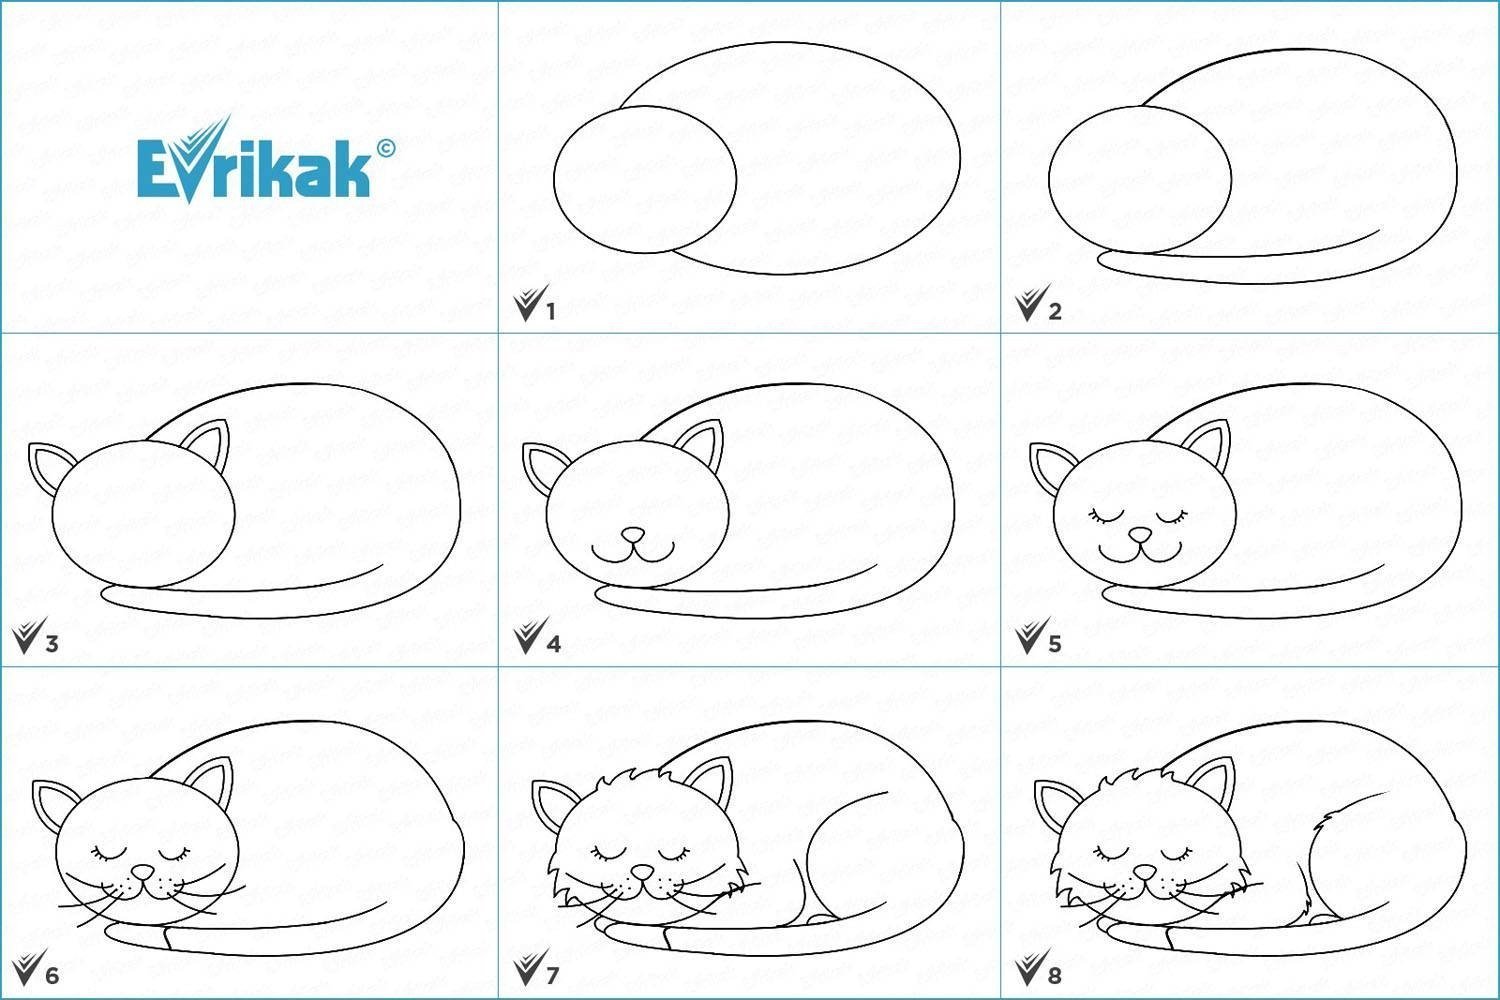 Нарисовать кошку поэтапно для детей. Схема рисования кошки. Схема рисования кошки для дошкольников. Поэтапное рисование котенка для детей. Простые рисунки для начинающих.